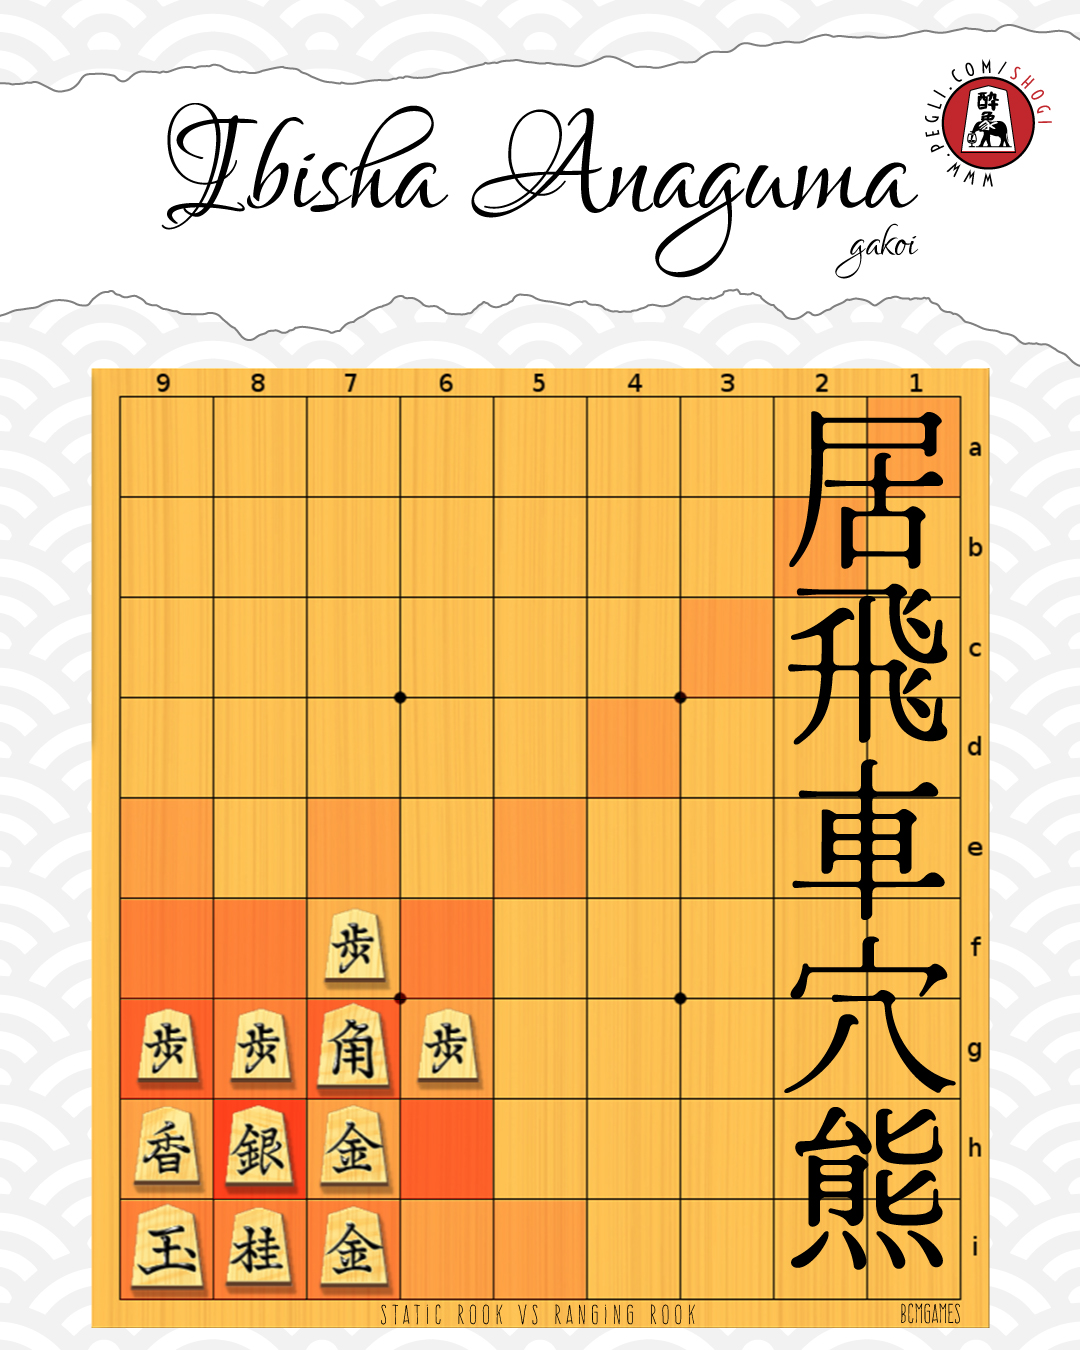 shogi - kakoi: ibisha anaguma gakoi